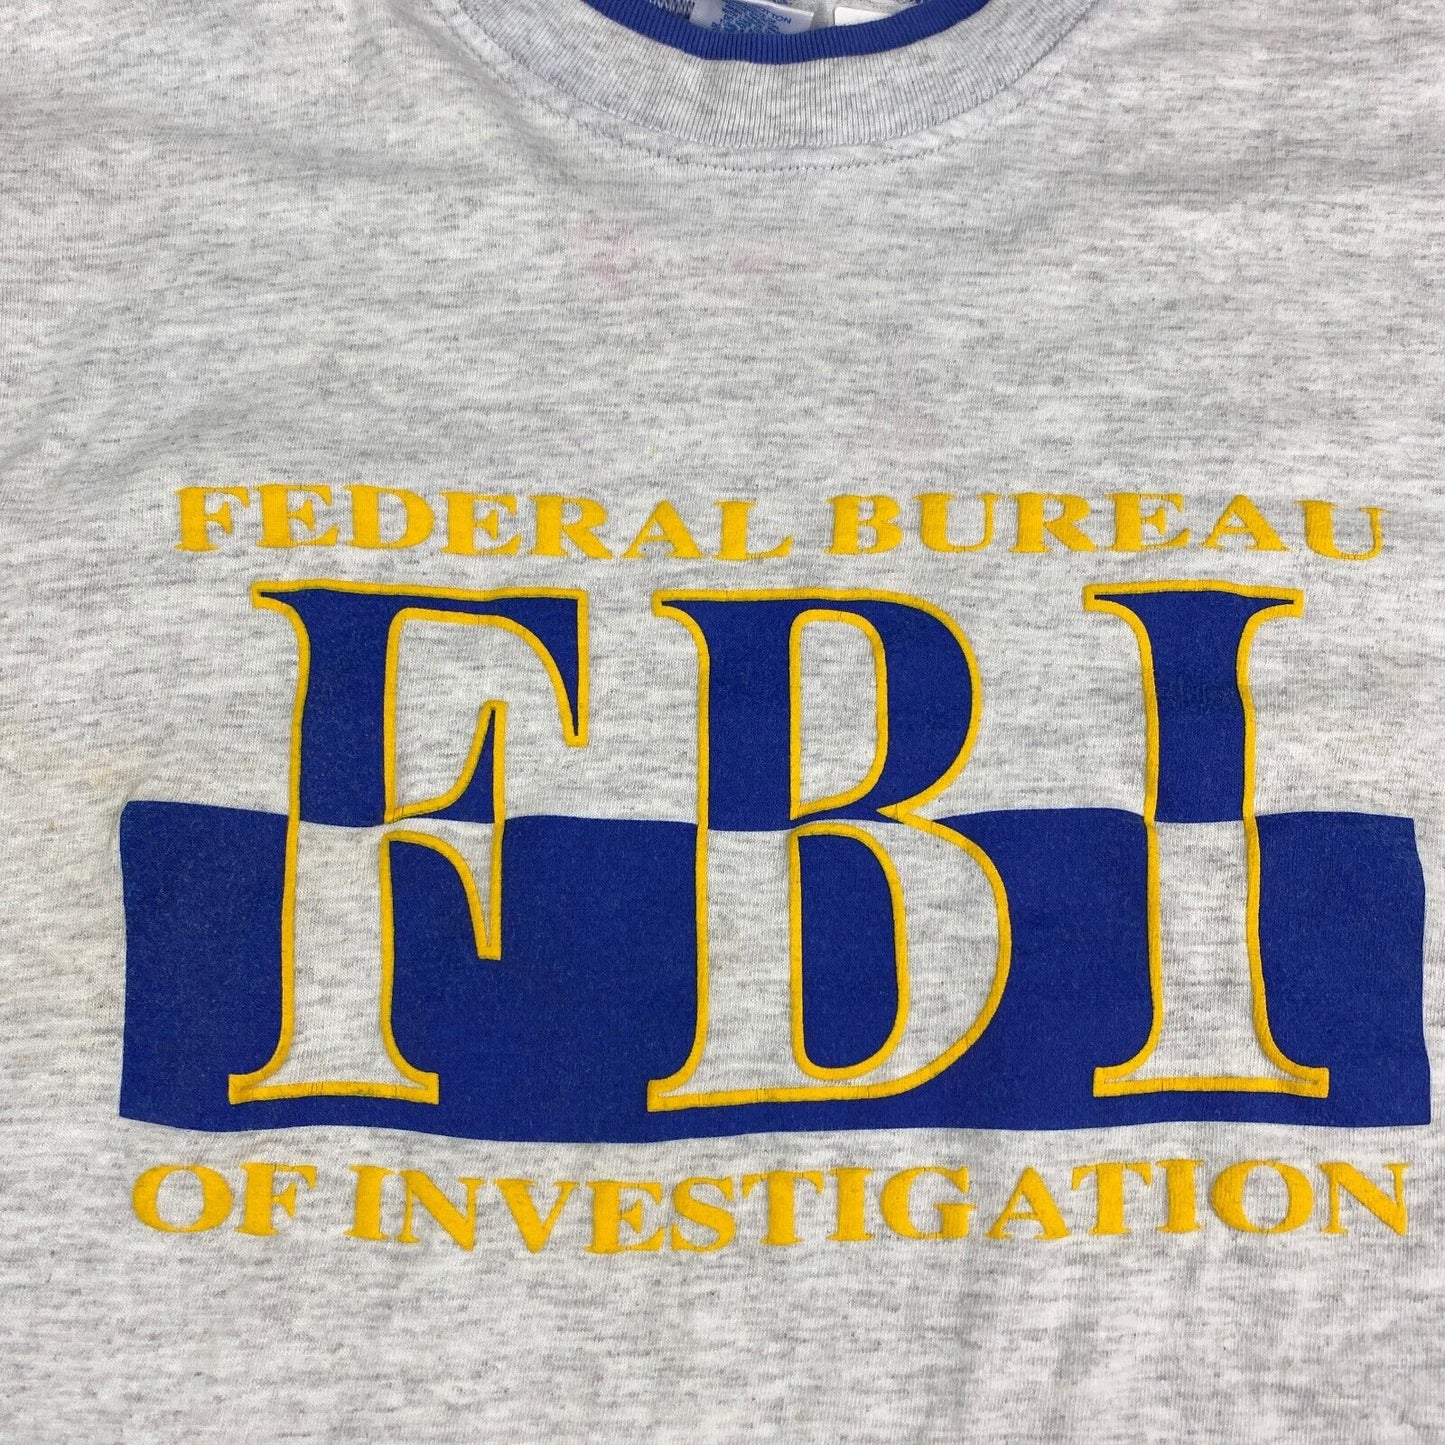 VINTAGE FEDERAL Bureau Of Investigation Grey T-Shirt sz Large Adult